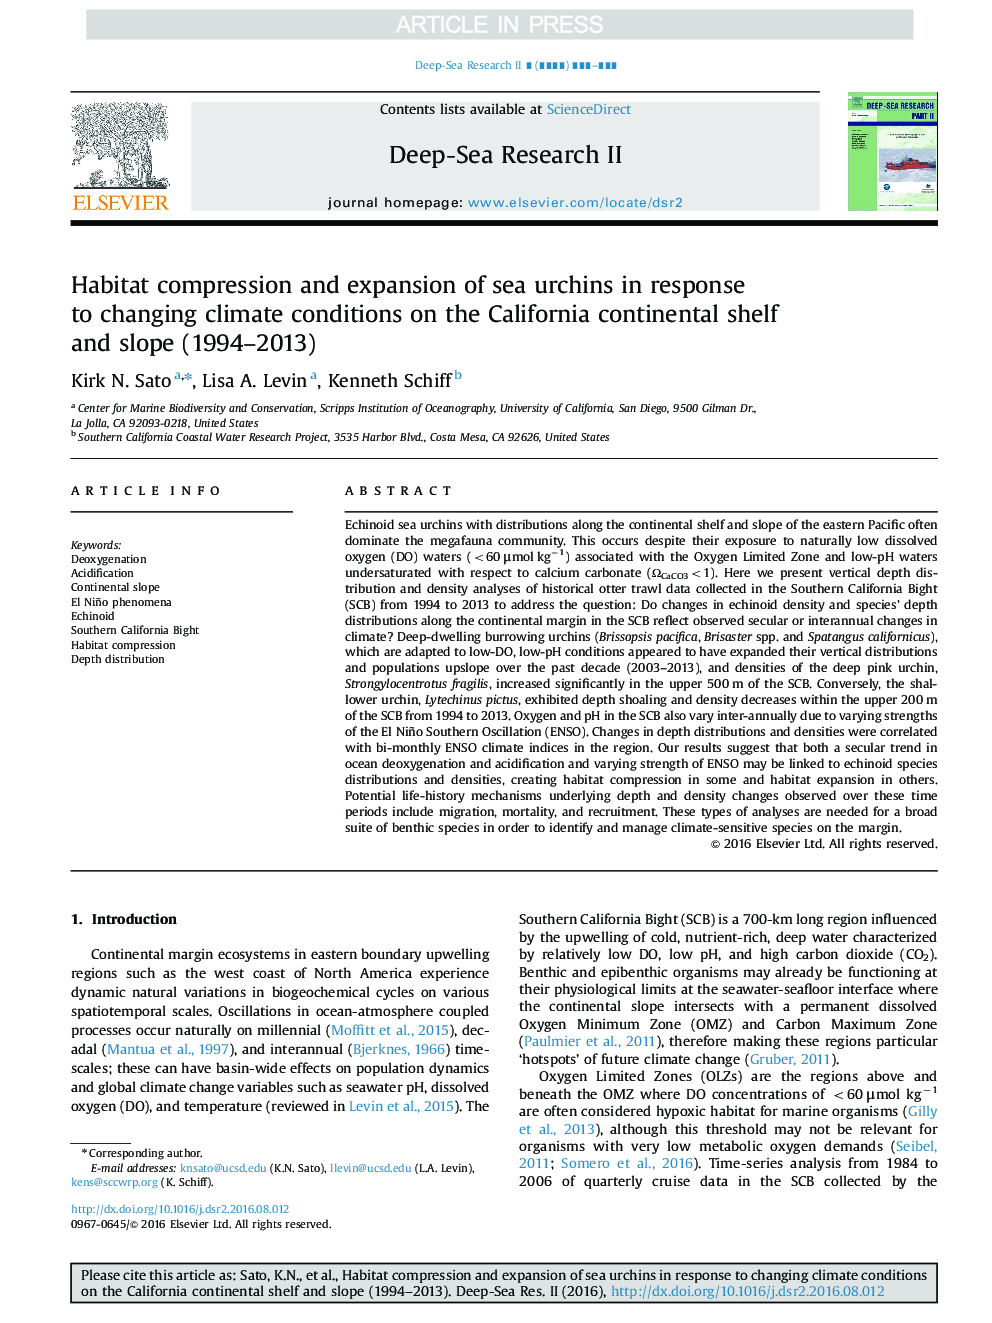 فشرده سازی محیط زیست و گسترش جوجه های دریایی در واکنش به تغییر شرایط آب و هوایی در قفسه های قاره کالیفرنیا و شیب (1994-2013) 